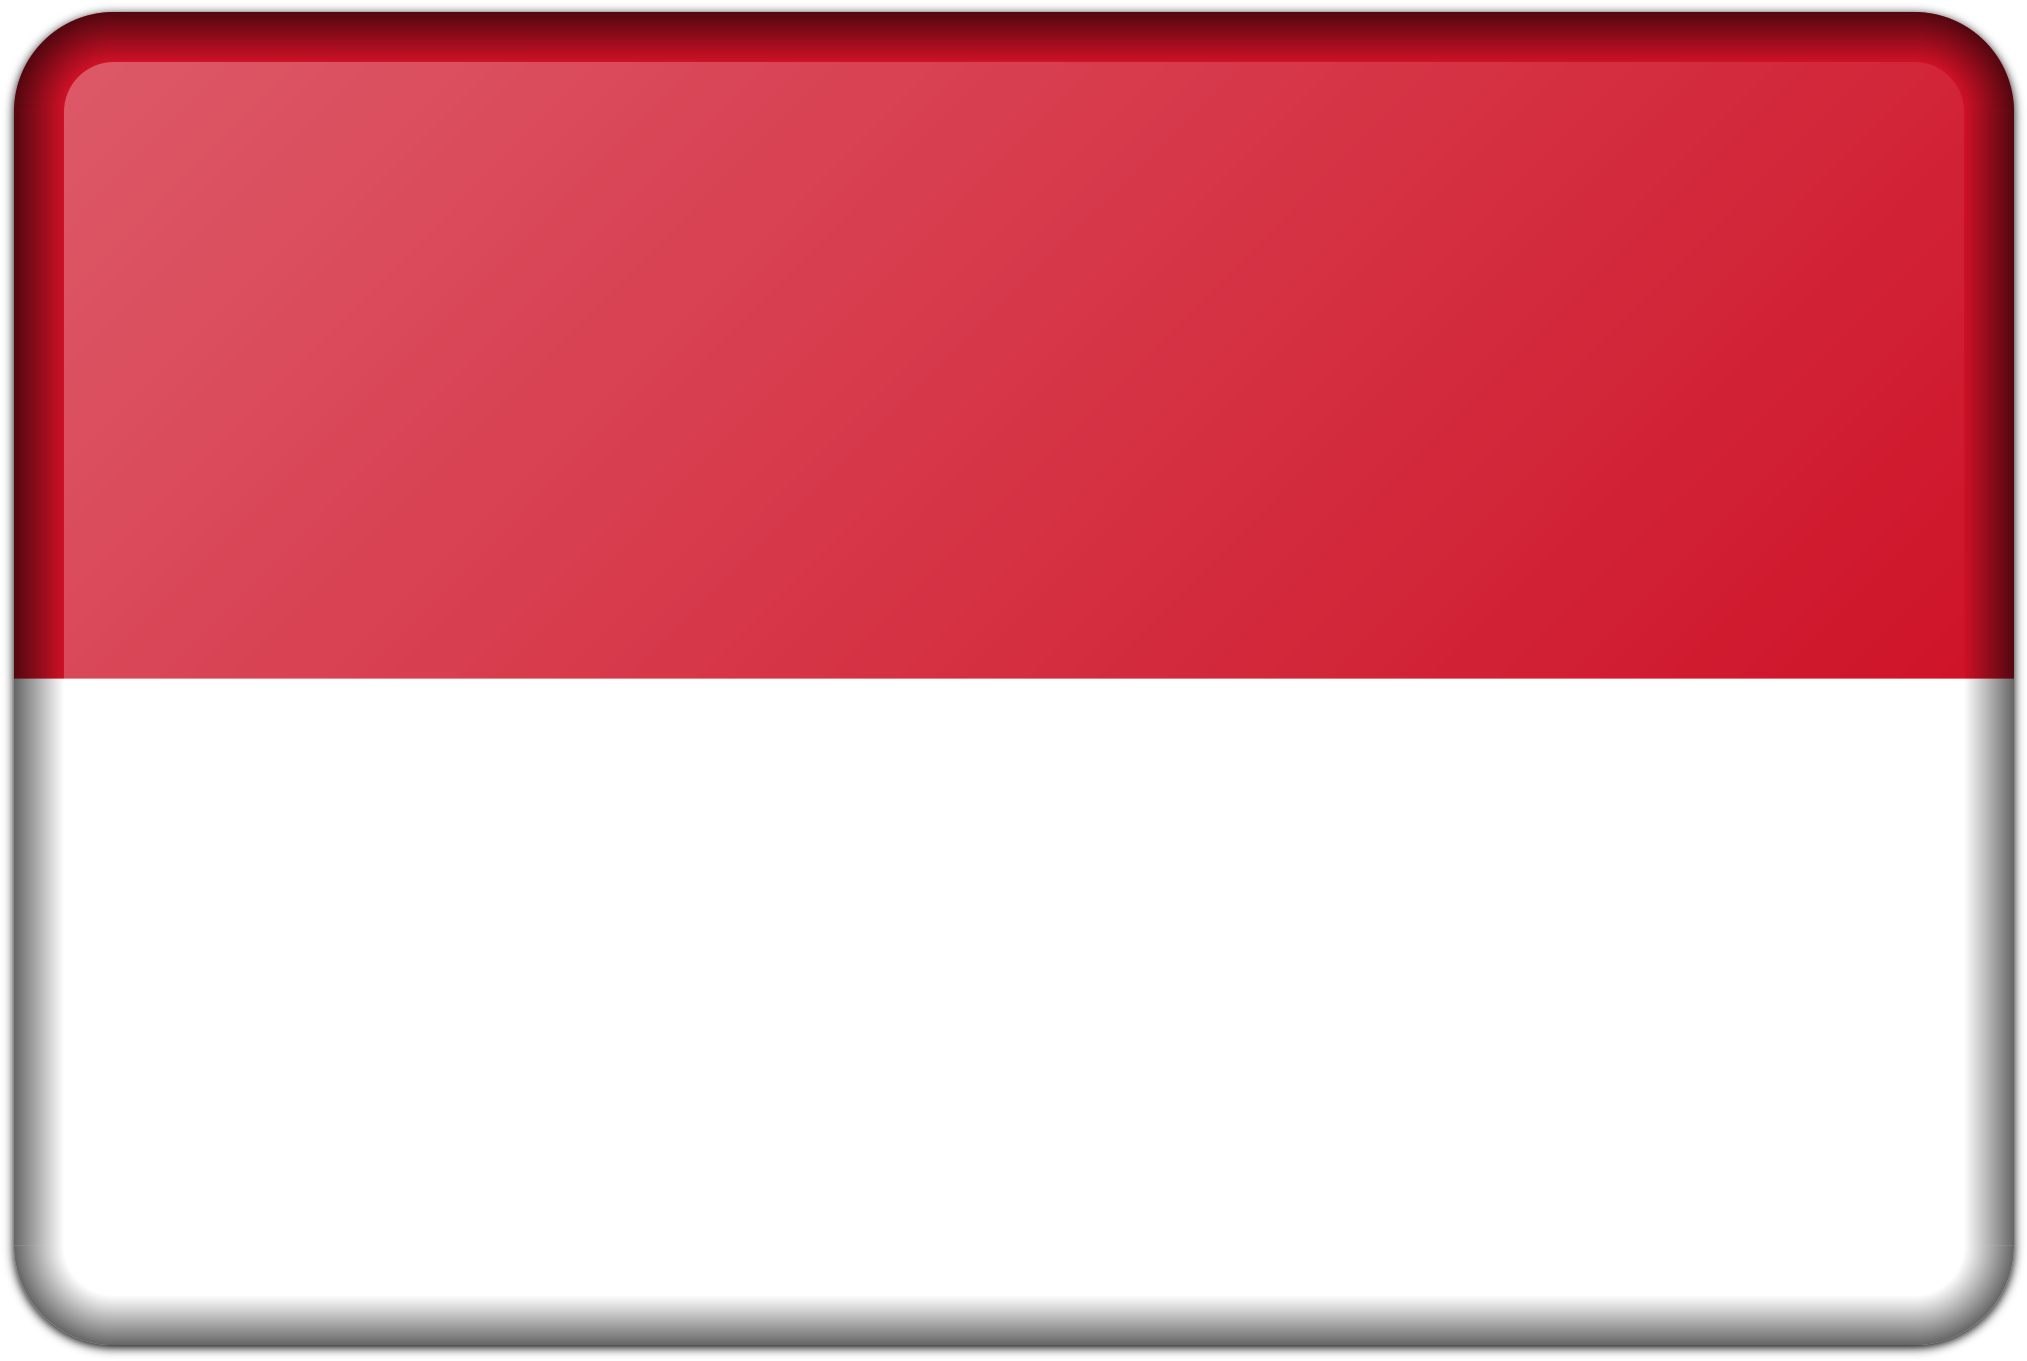 Big Image - Indonesia Icon Transparent (2400x1600)